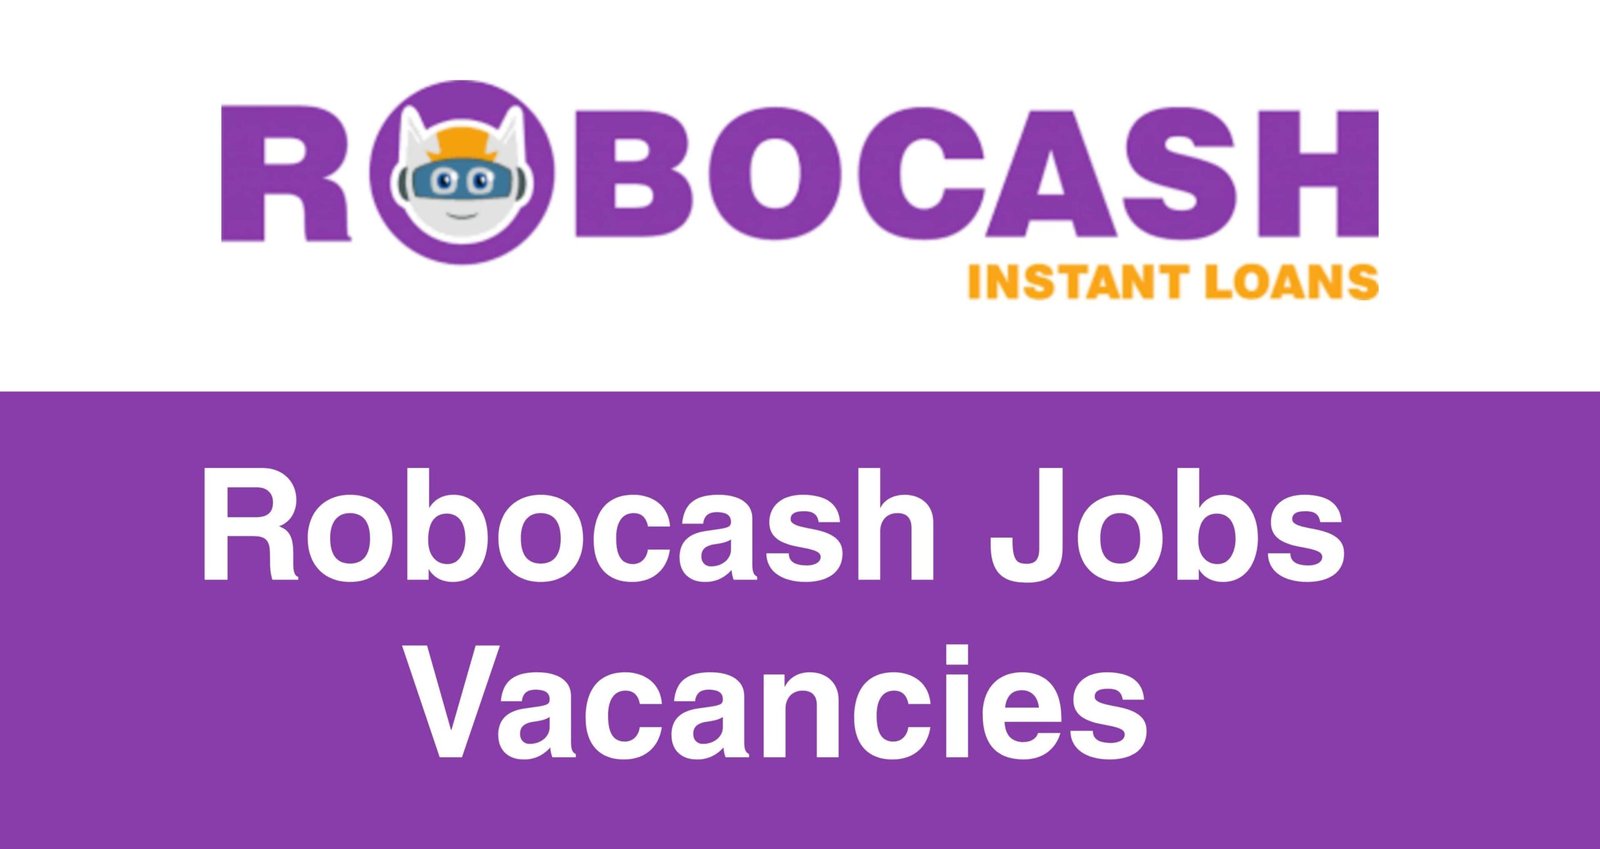 Robocash Jobs Vacancies